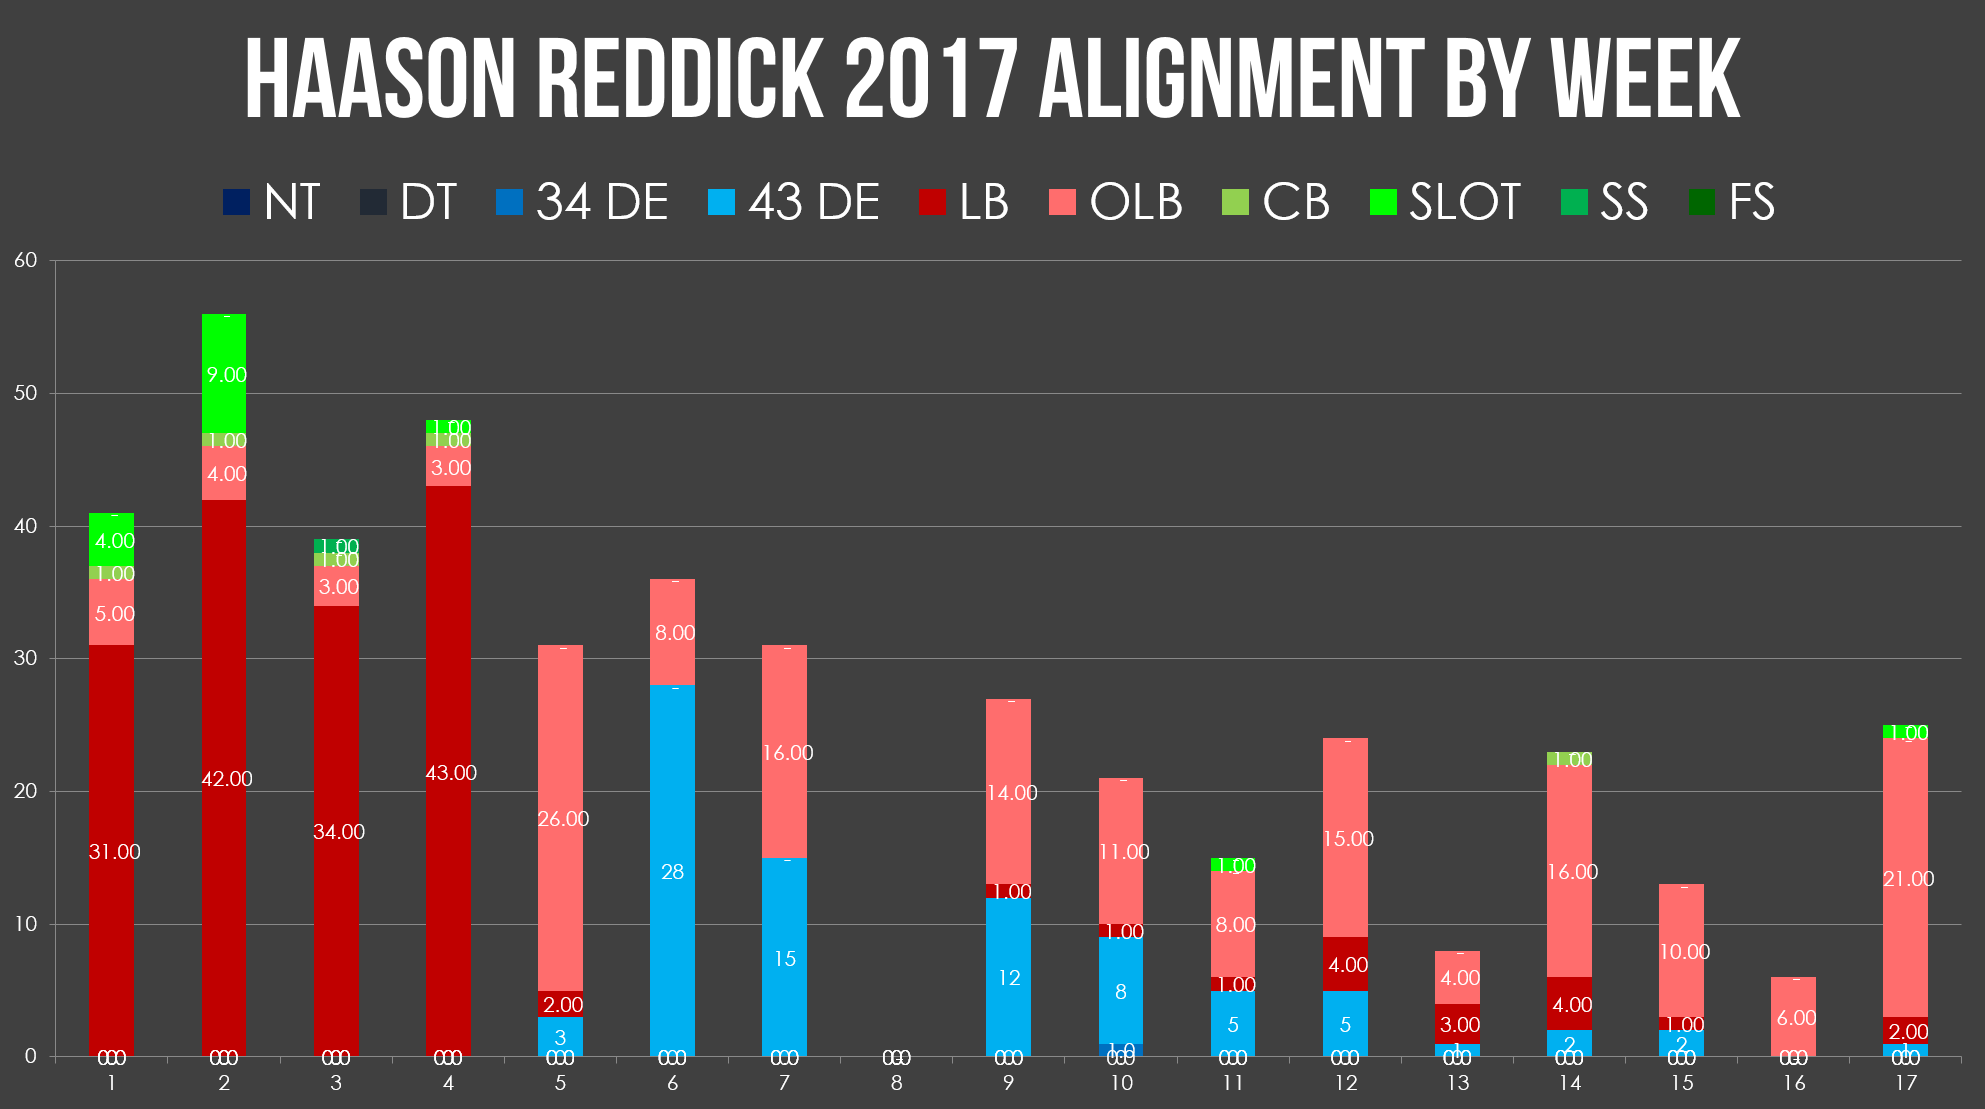 haason reddick alignment by week 17